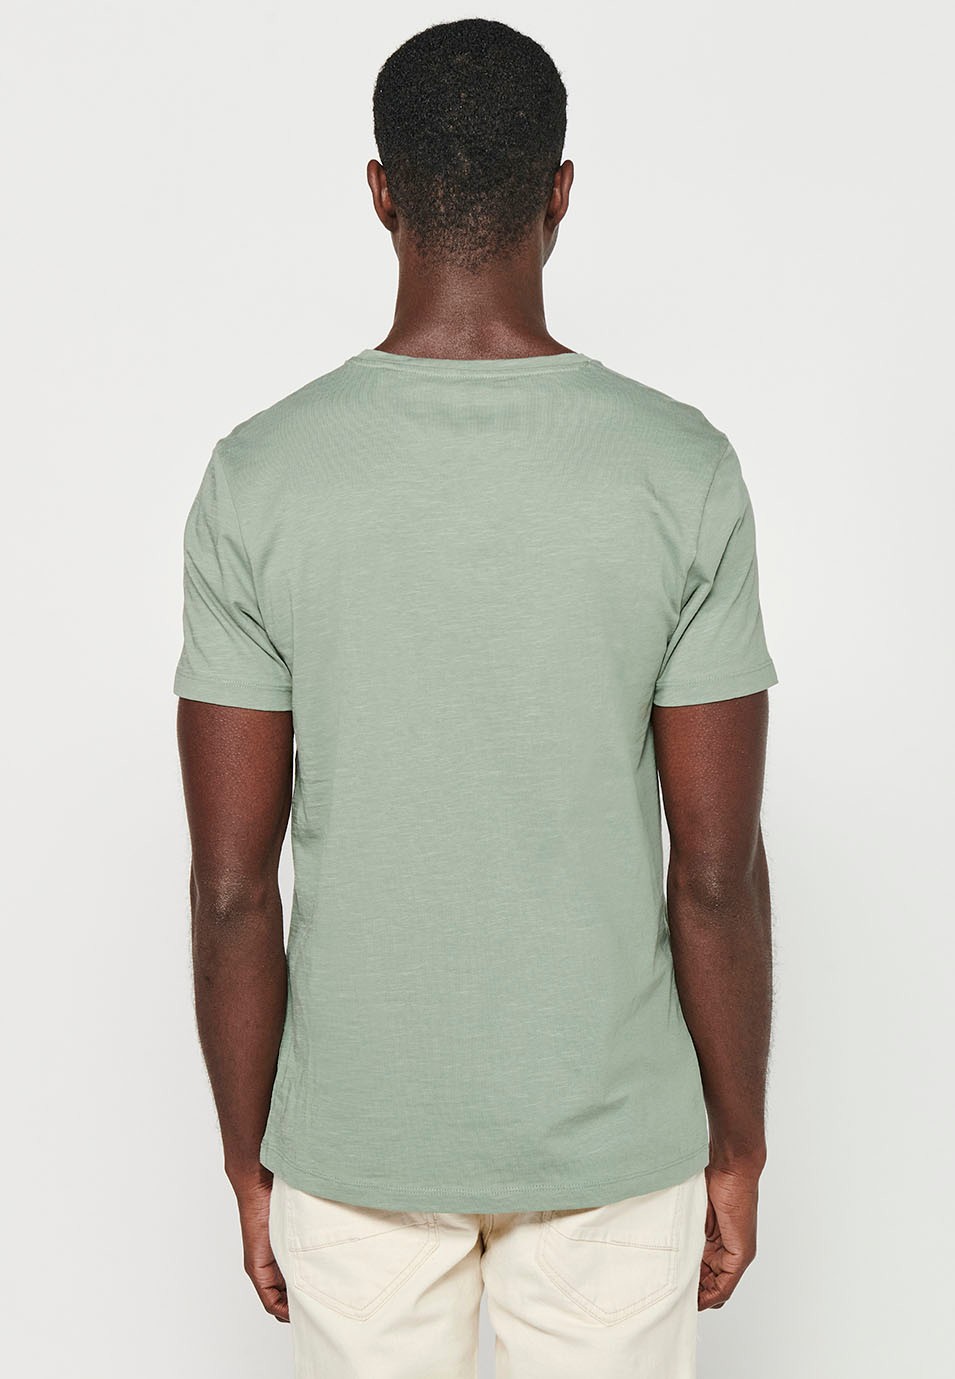 Herren-Kurzarm-T-Shirt aus Baumwolle mit Rundhalsausschnitt in Khaki-Farbe und Print vorne 3